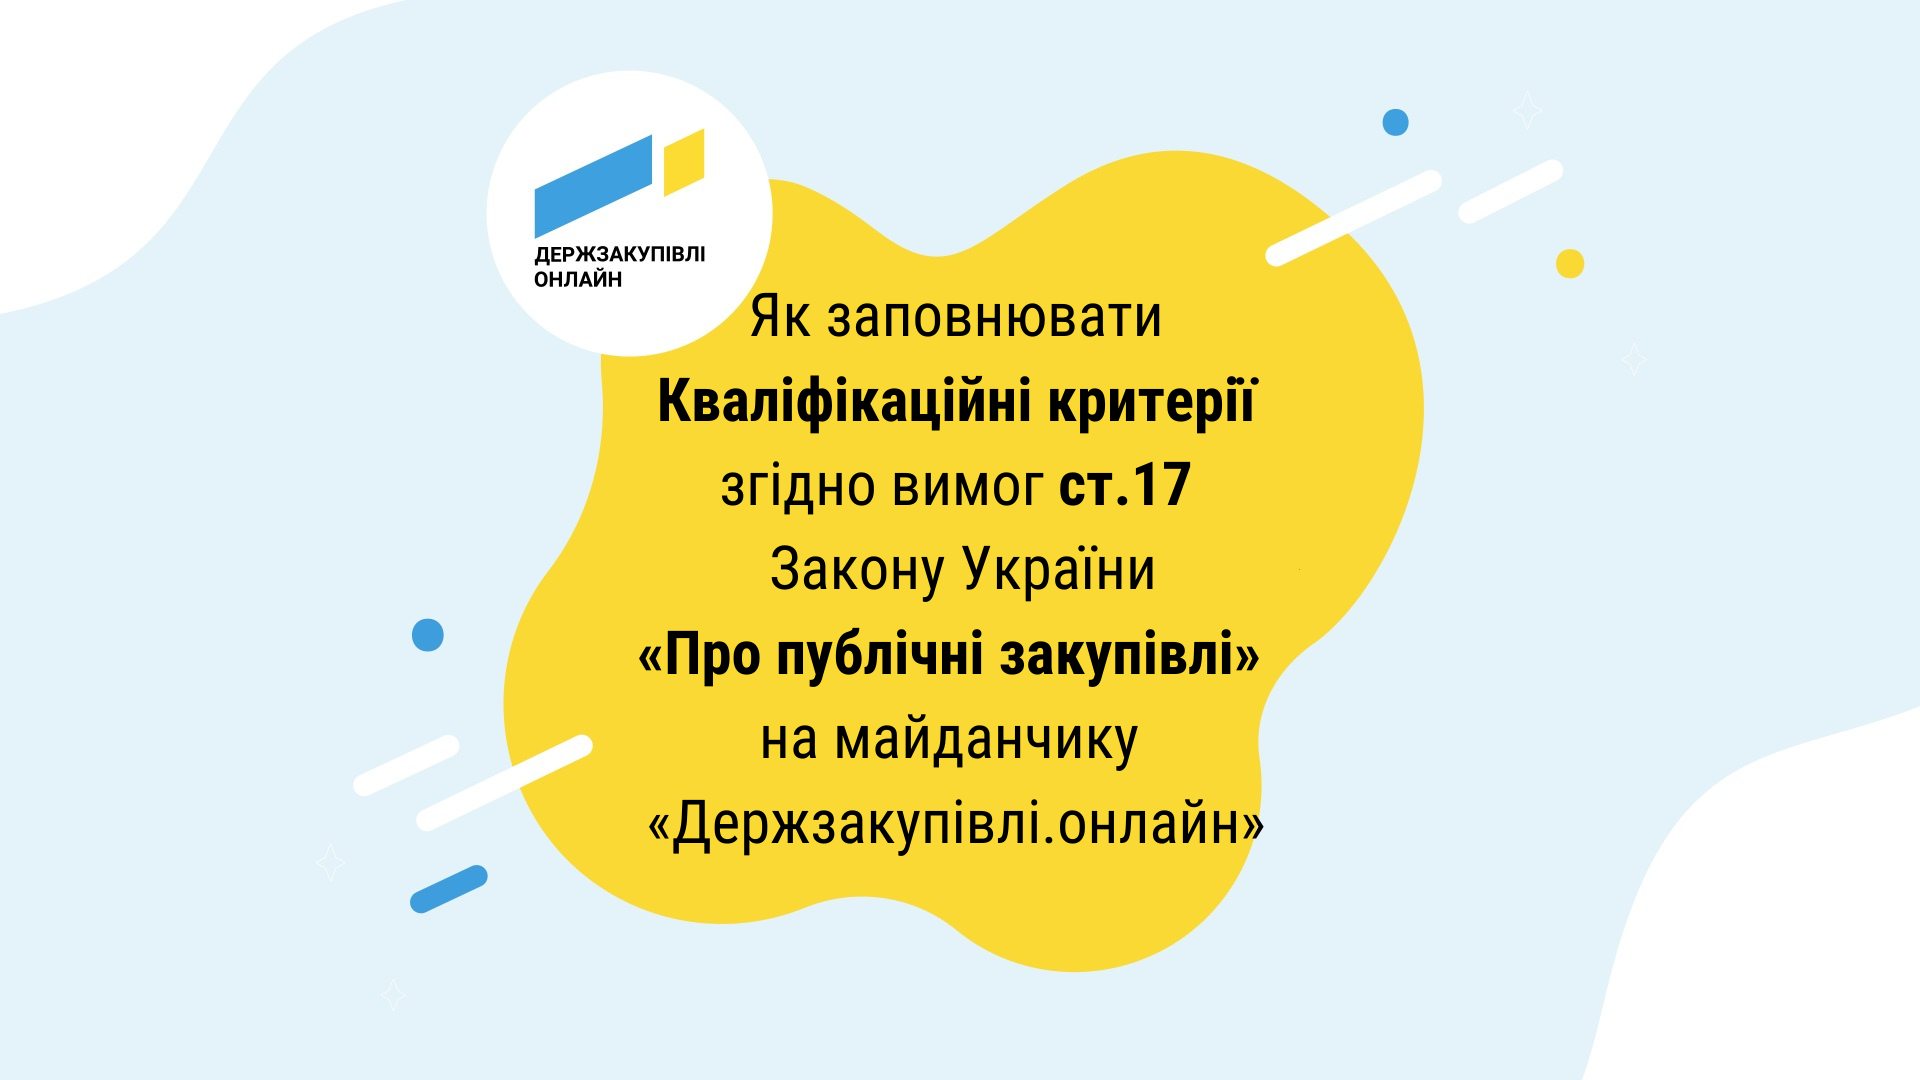 Як заповнювати Кваліфікаційні критерії згідно вимог ст.17 Закону України «Про публічні закупівлі» на майданчику «Держзакупівлі.онлайн»